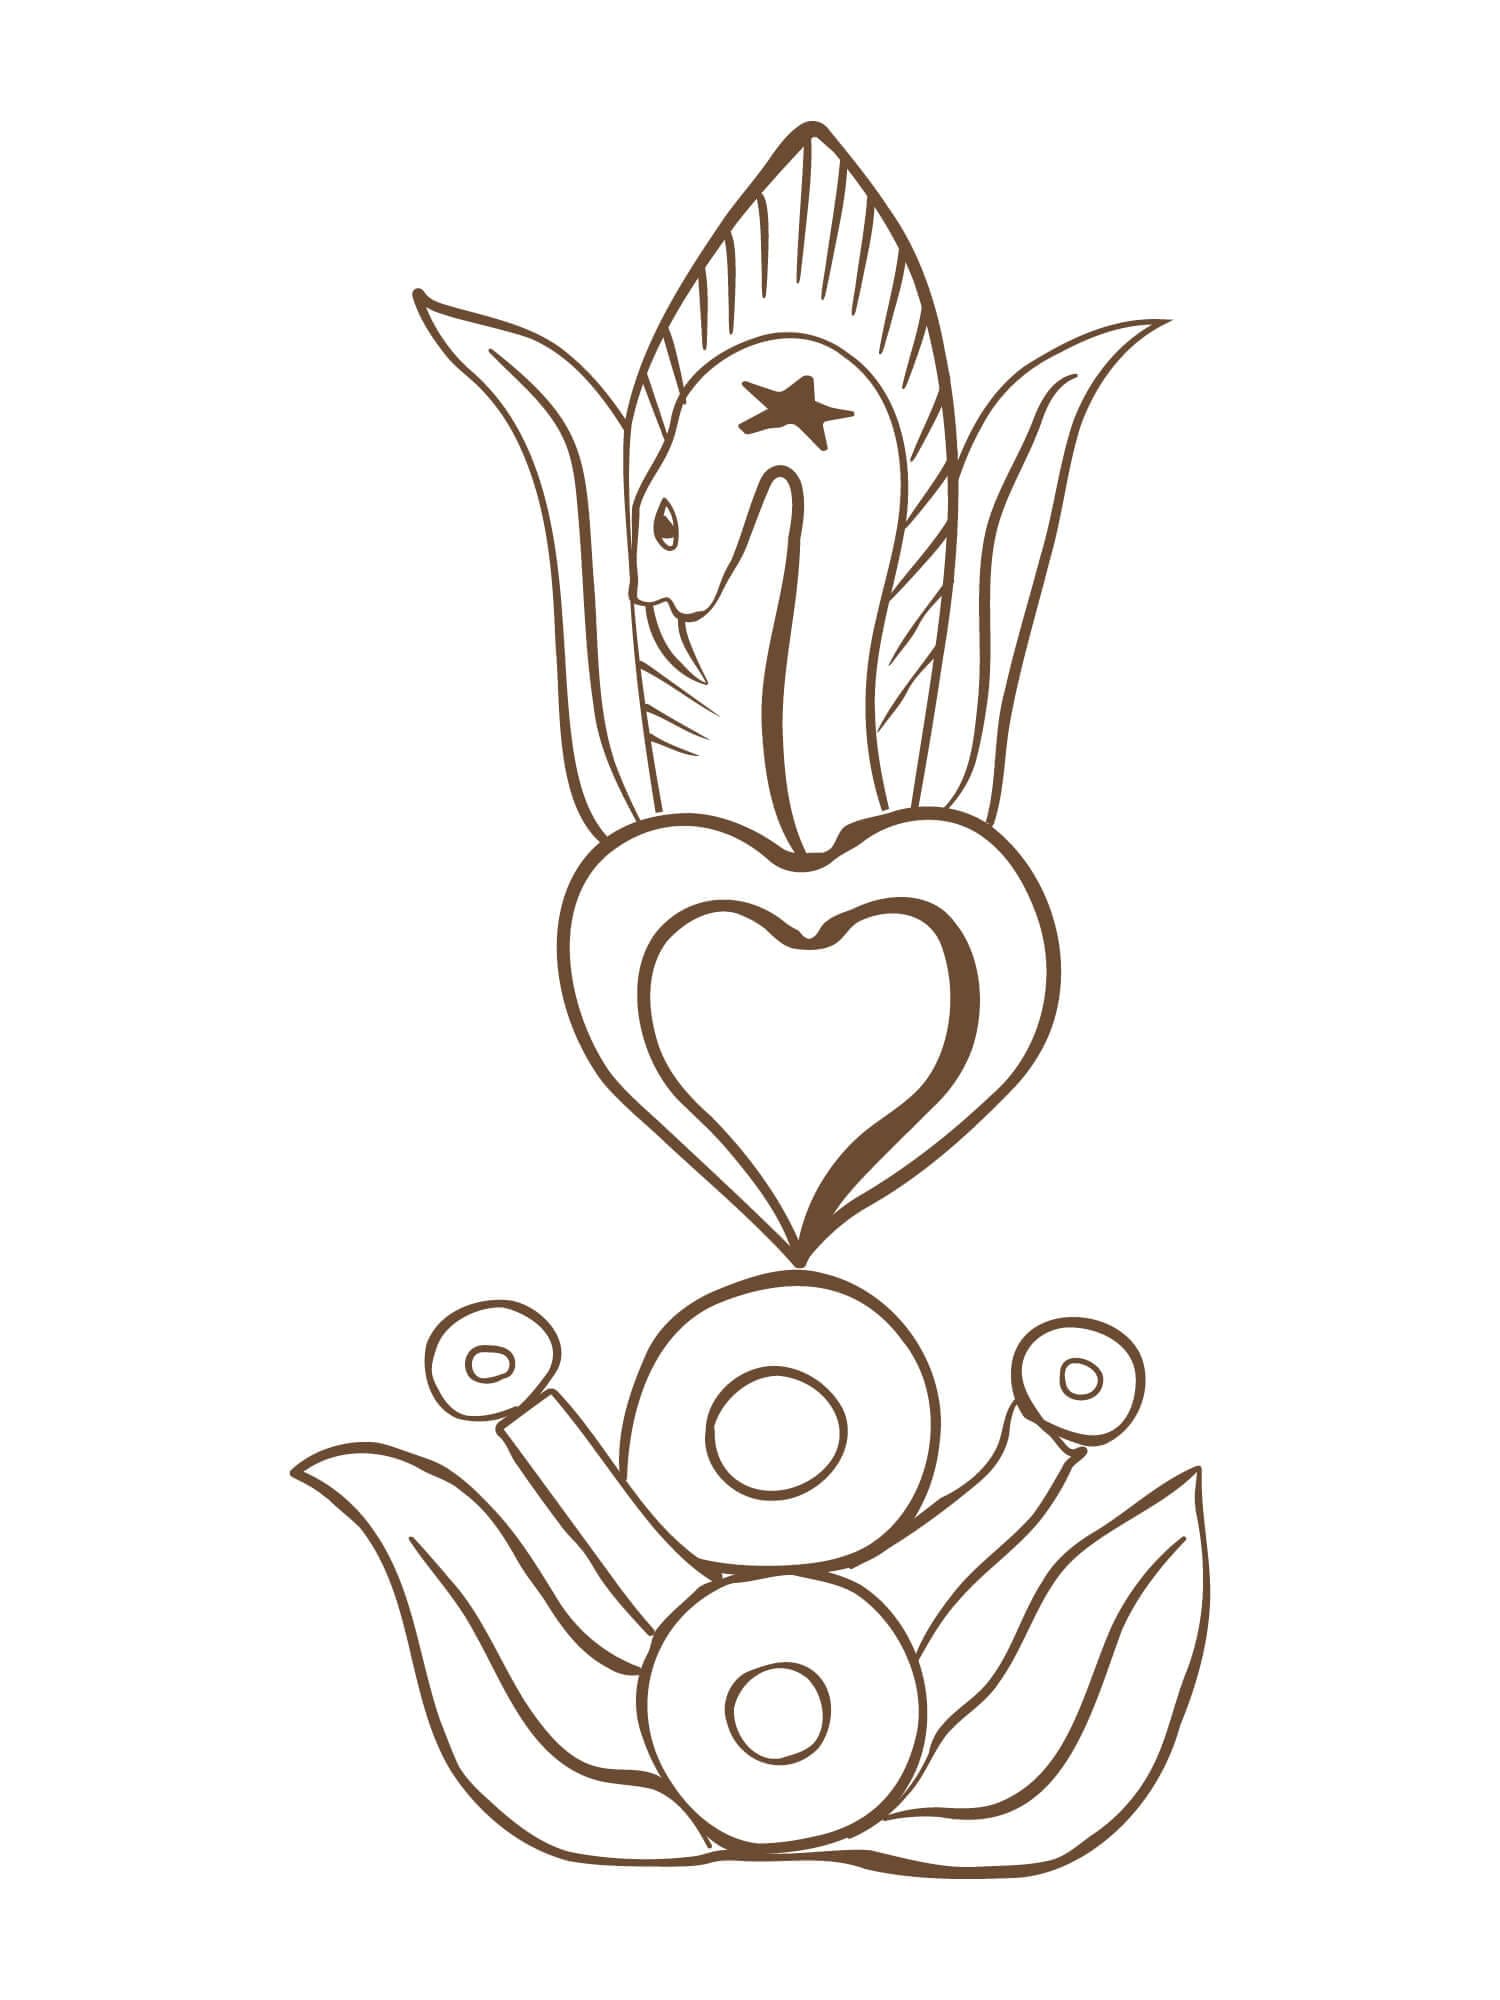 Le hiéroglyphe "Sacred Intuition" par Ichetkar est un symbole aztèque empreint de la culture mexicaine, créé pour le spa Esperanza.